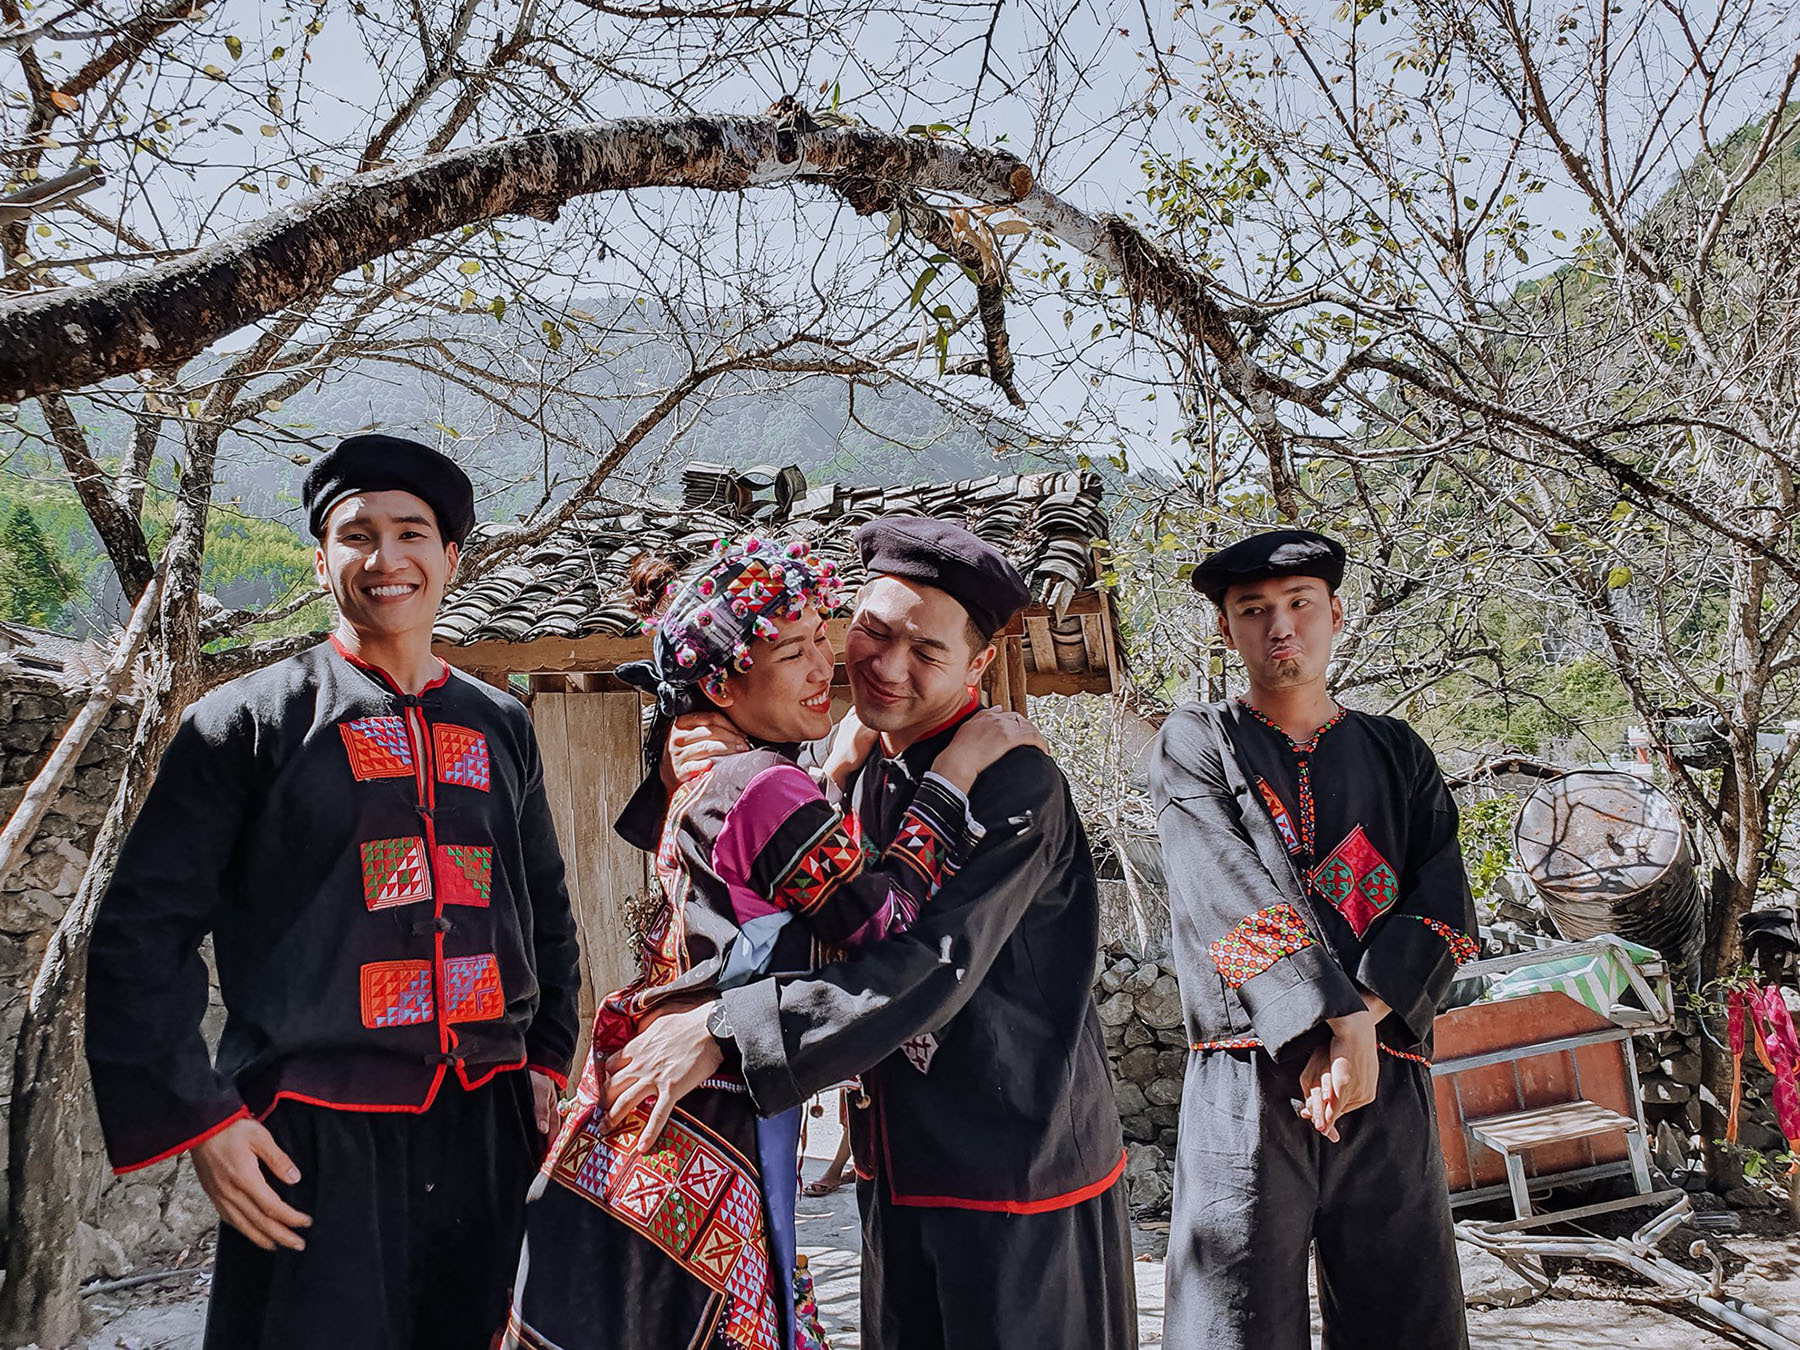 Du khách có thể mặc trang phục truyền thống địa phương để có những bức ảnh đẹp khi du lịch Hà Giang.